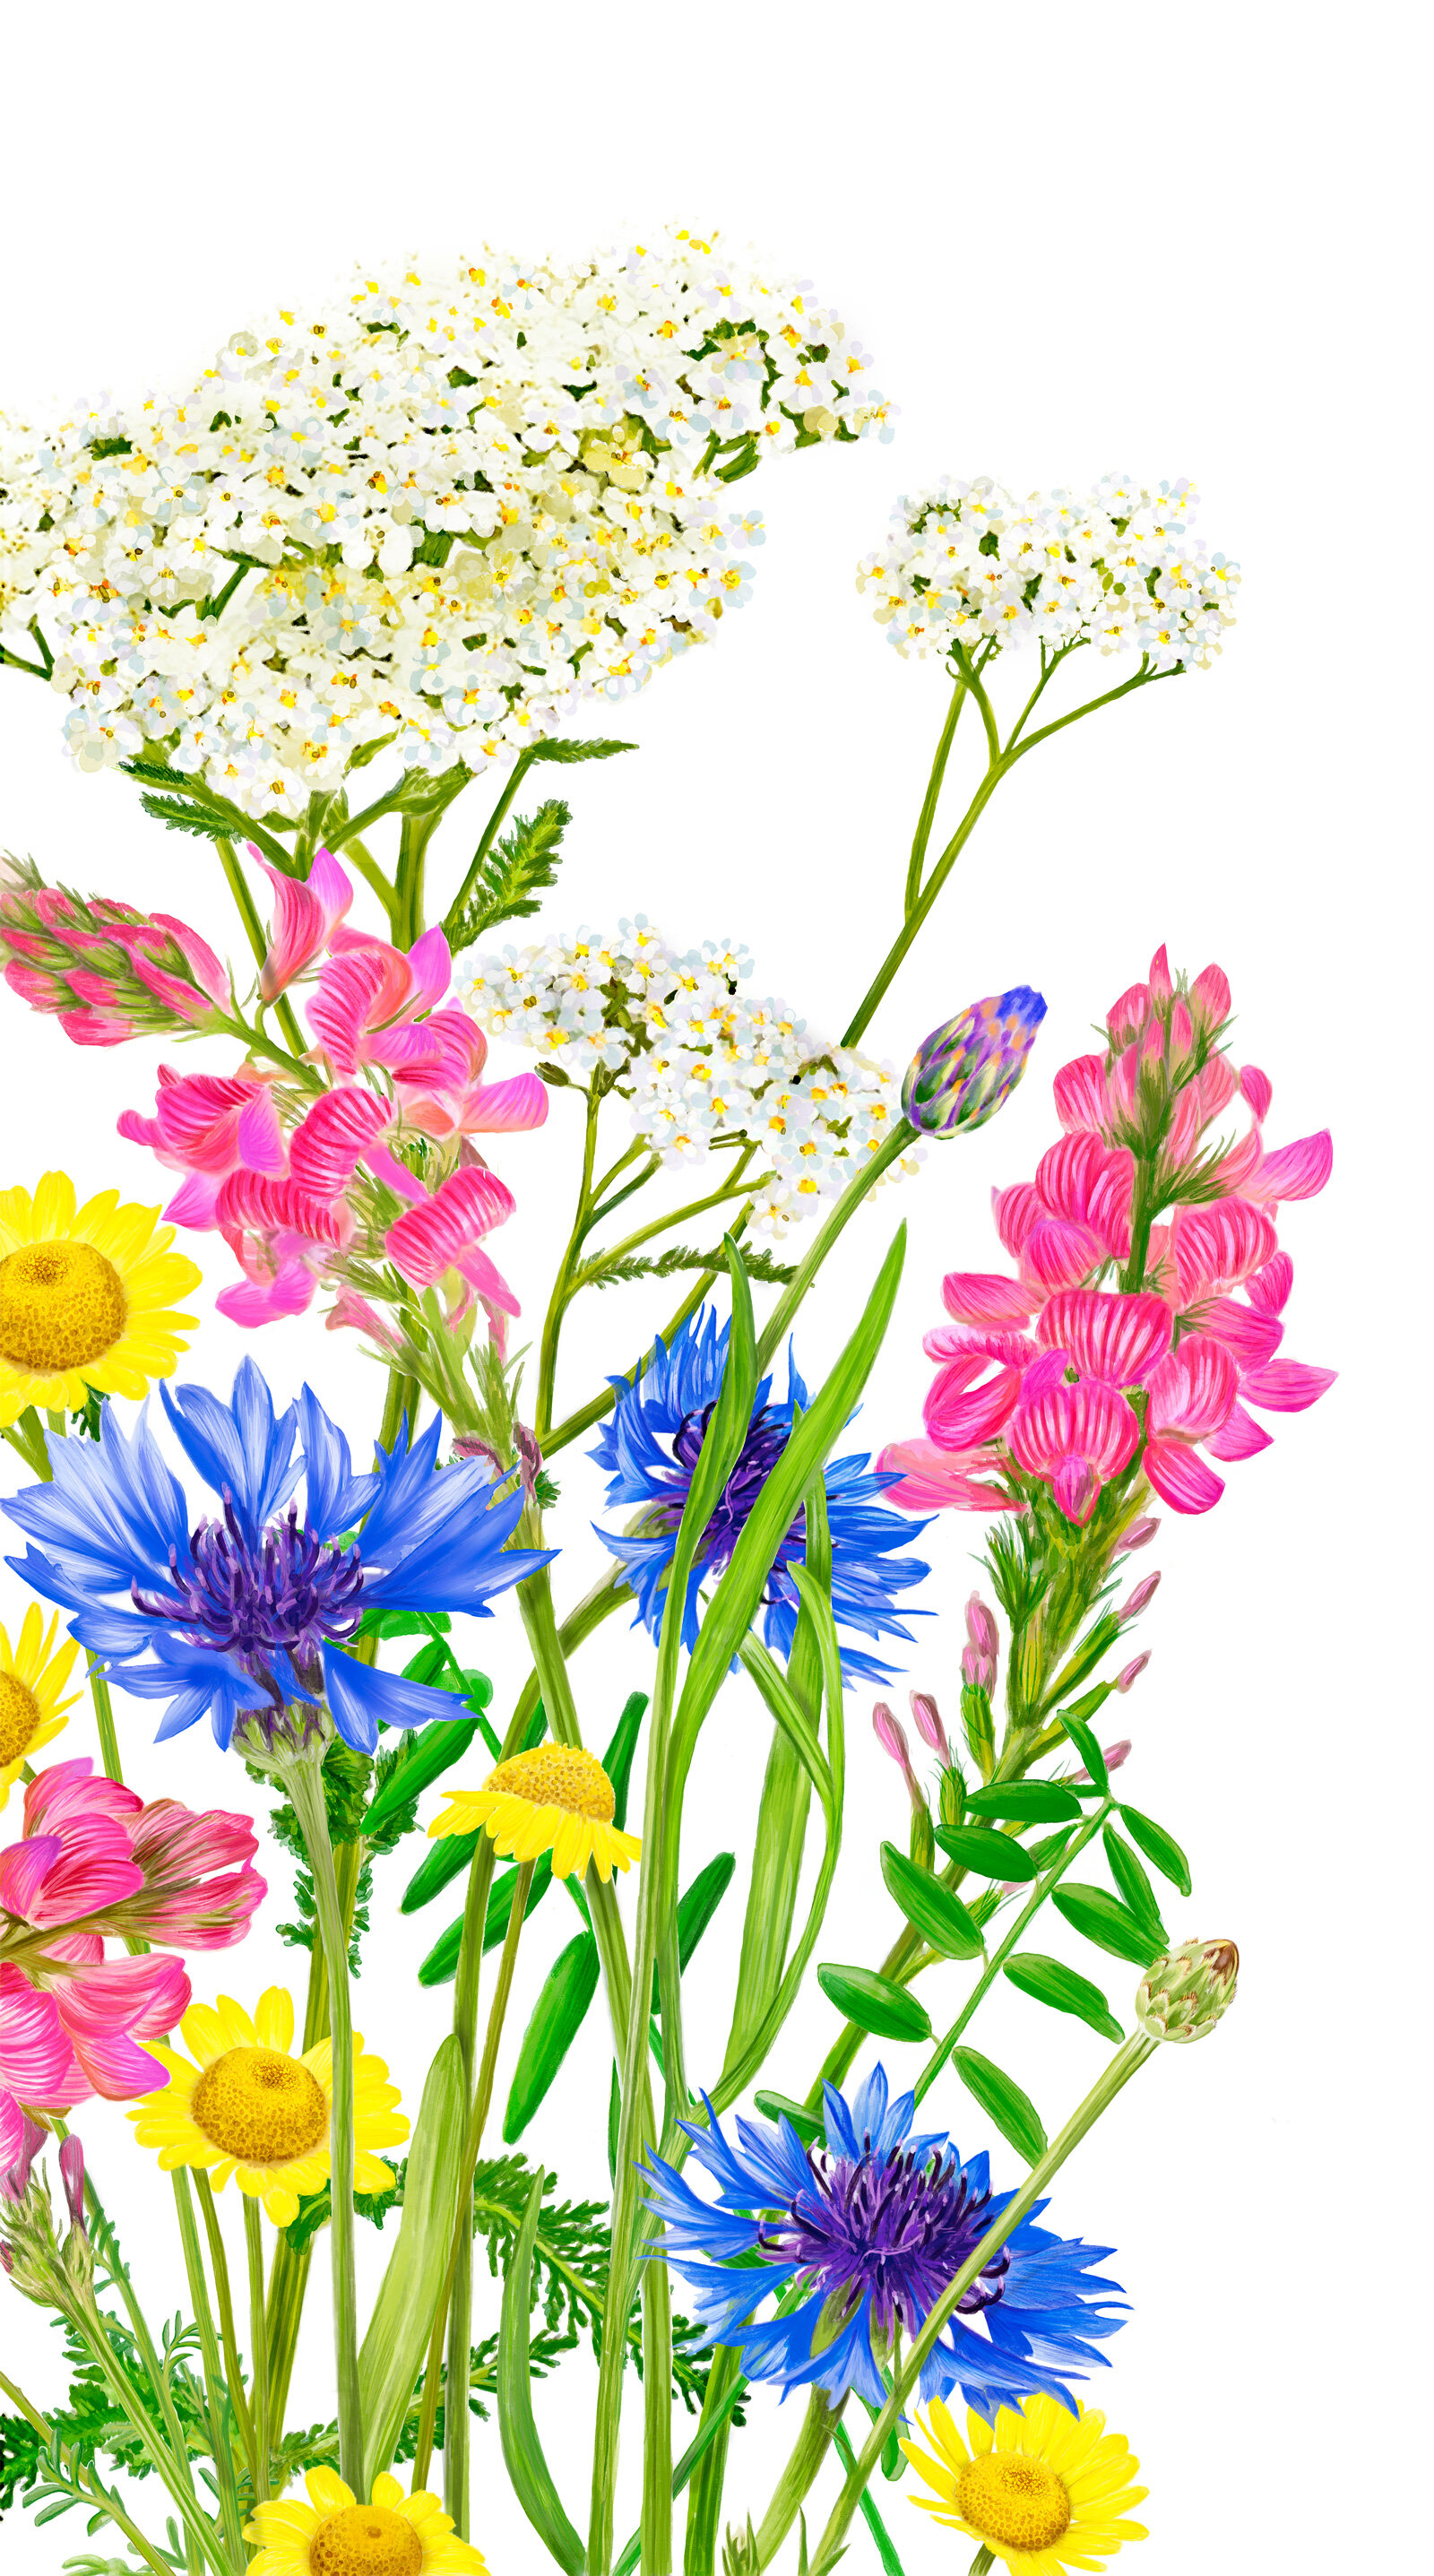 oculus-illustration-pflanzenillustration-hauert-verpackungsdesign-wildblumen-2